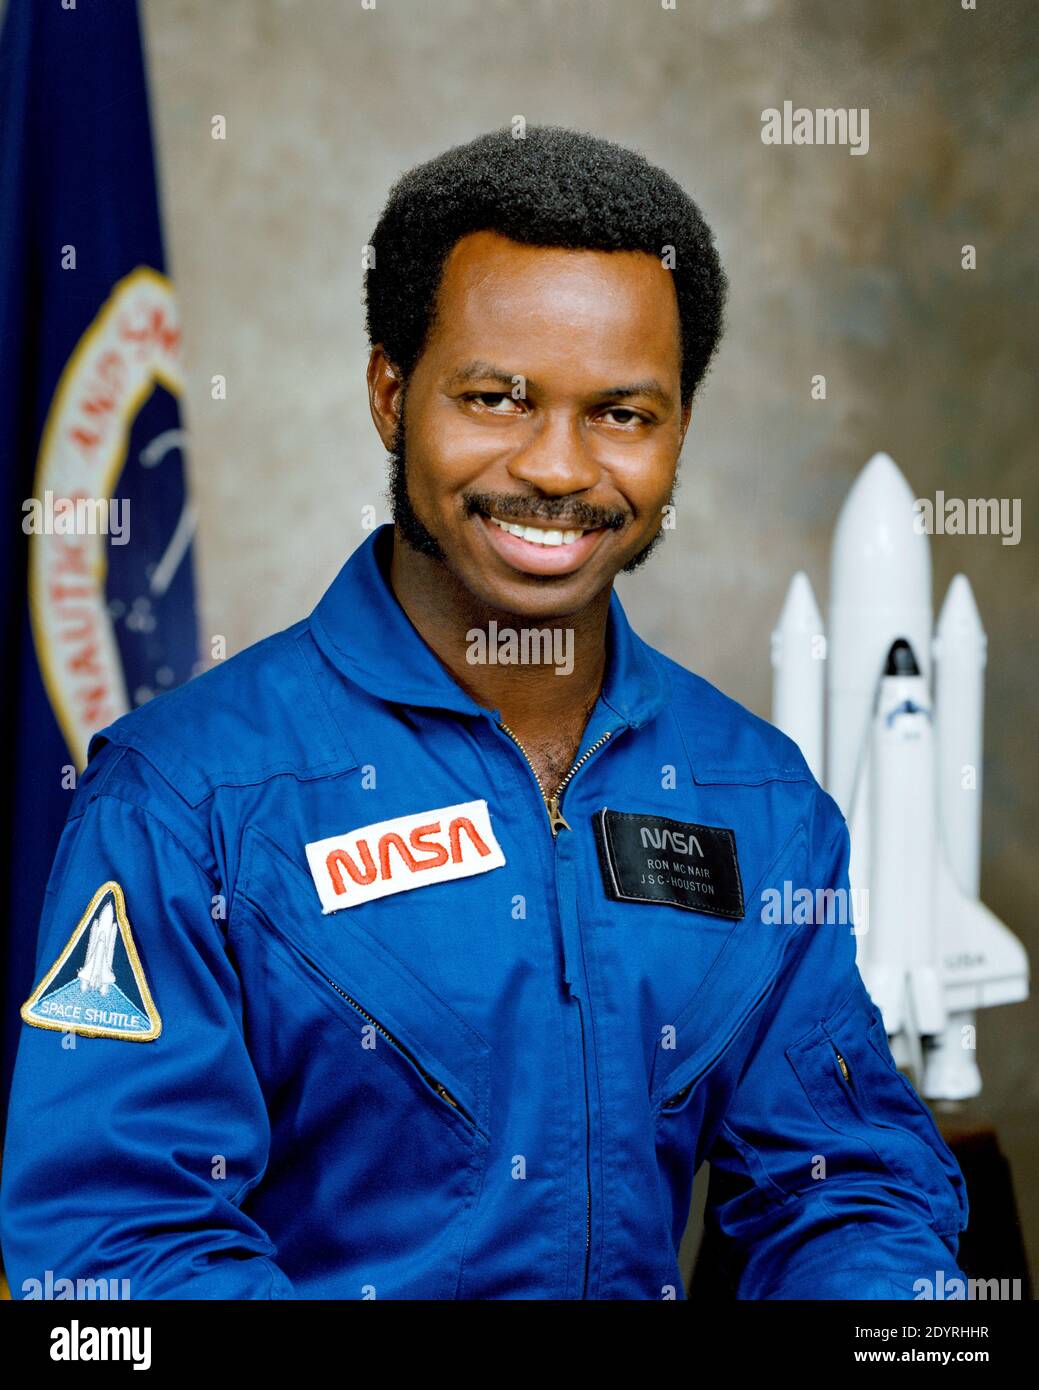 Ronald Erwin McNair (21 de octubre de 1950 – 28 de enero de 1986) fue un astronauta y físico estadounidense de la NASA. Murió durante el lanzamiento del Transbordador Espacial Challenger en la misión STS-51-L, en la que sirvió como uno de los tres especialistas de la misión en una tripulación de siete. Antes del desastre de Challenger, voló como especialista de misión en STS-41-B a bordo de Challenger del 3 al 11 de febrero de 1984, convirtiéndose en el segundo afroamericano en volar en el espacio. Foto de stock